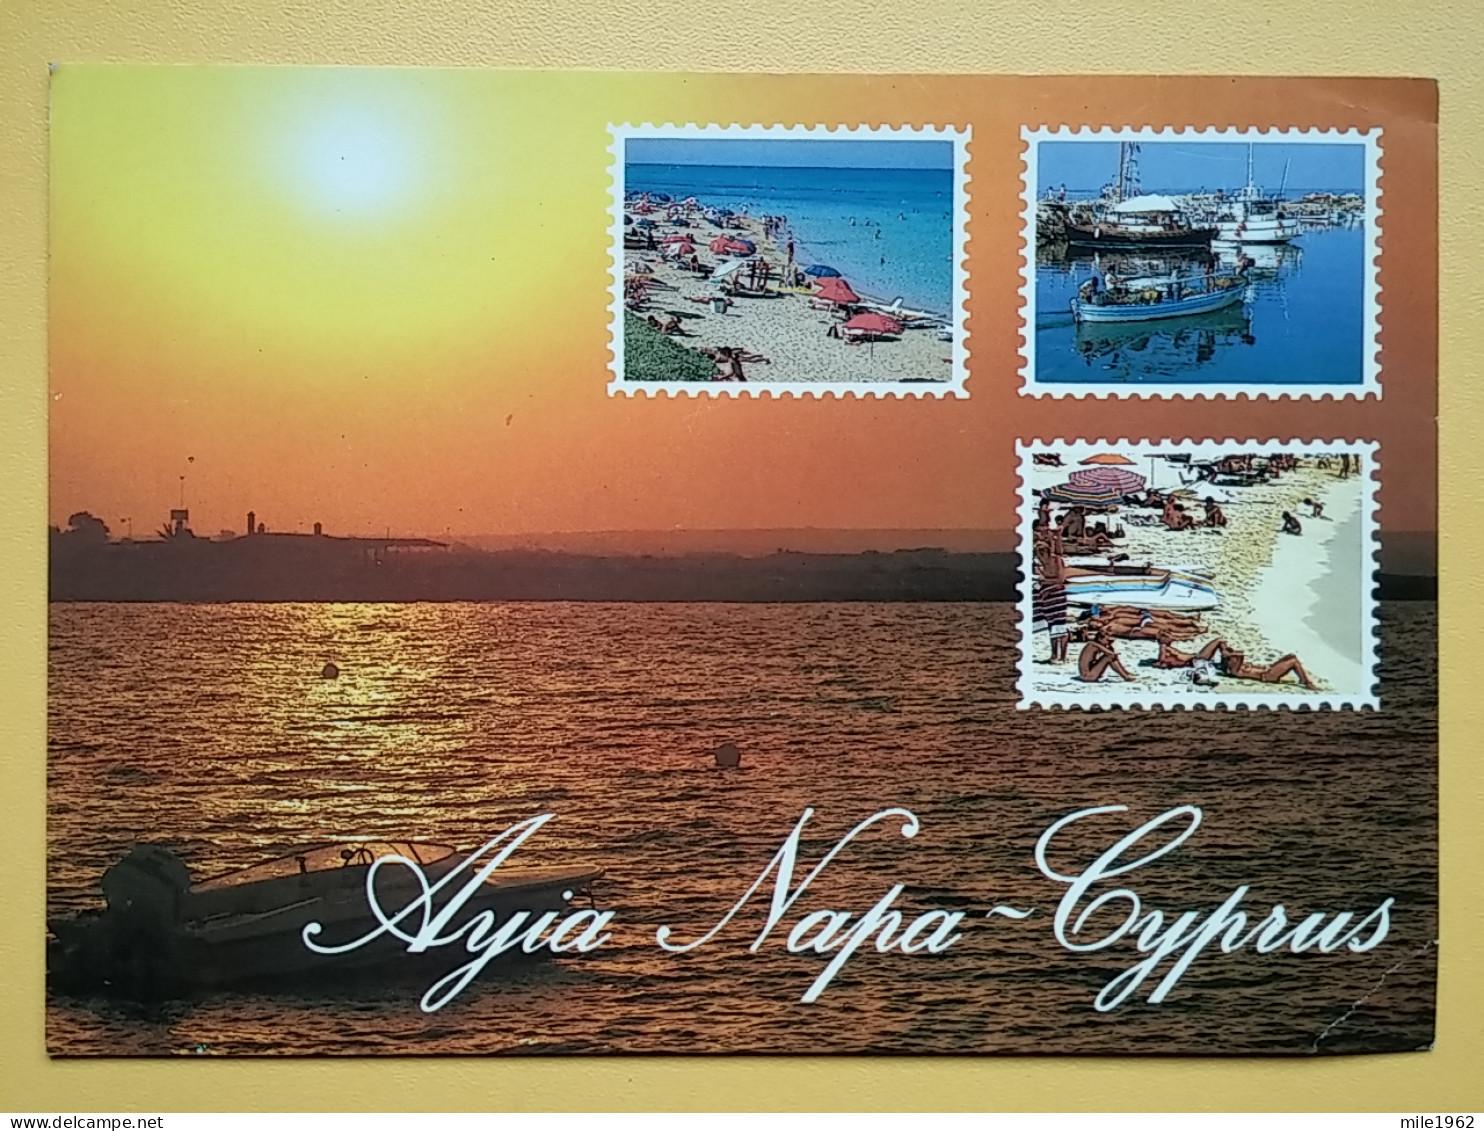 KOV 530-1 - CYPRUS - Chypre